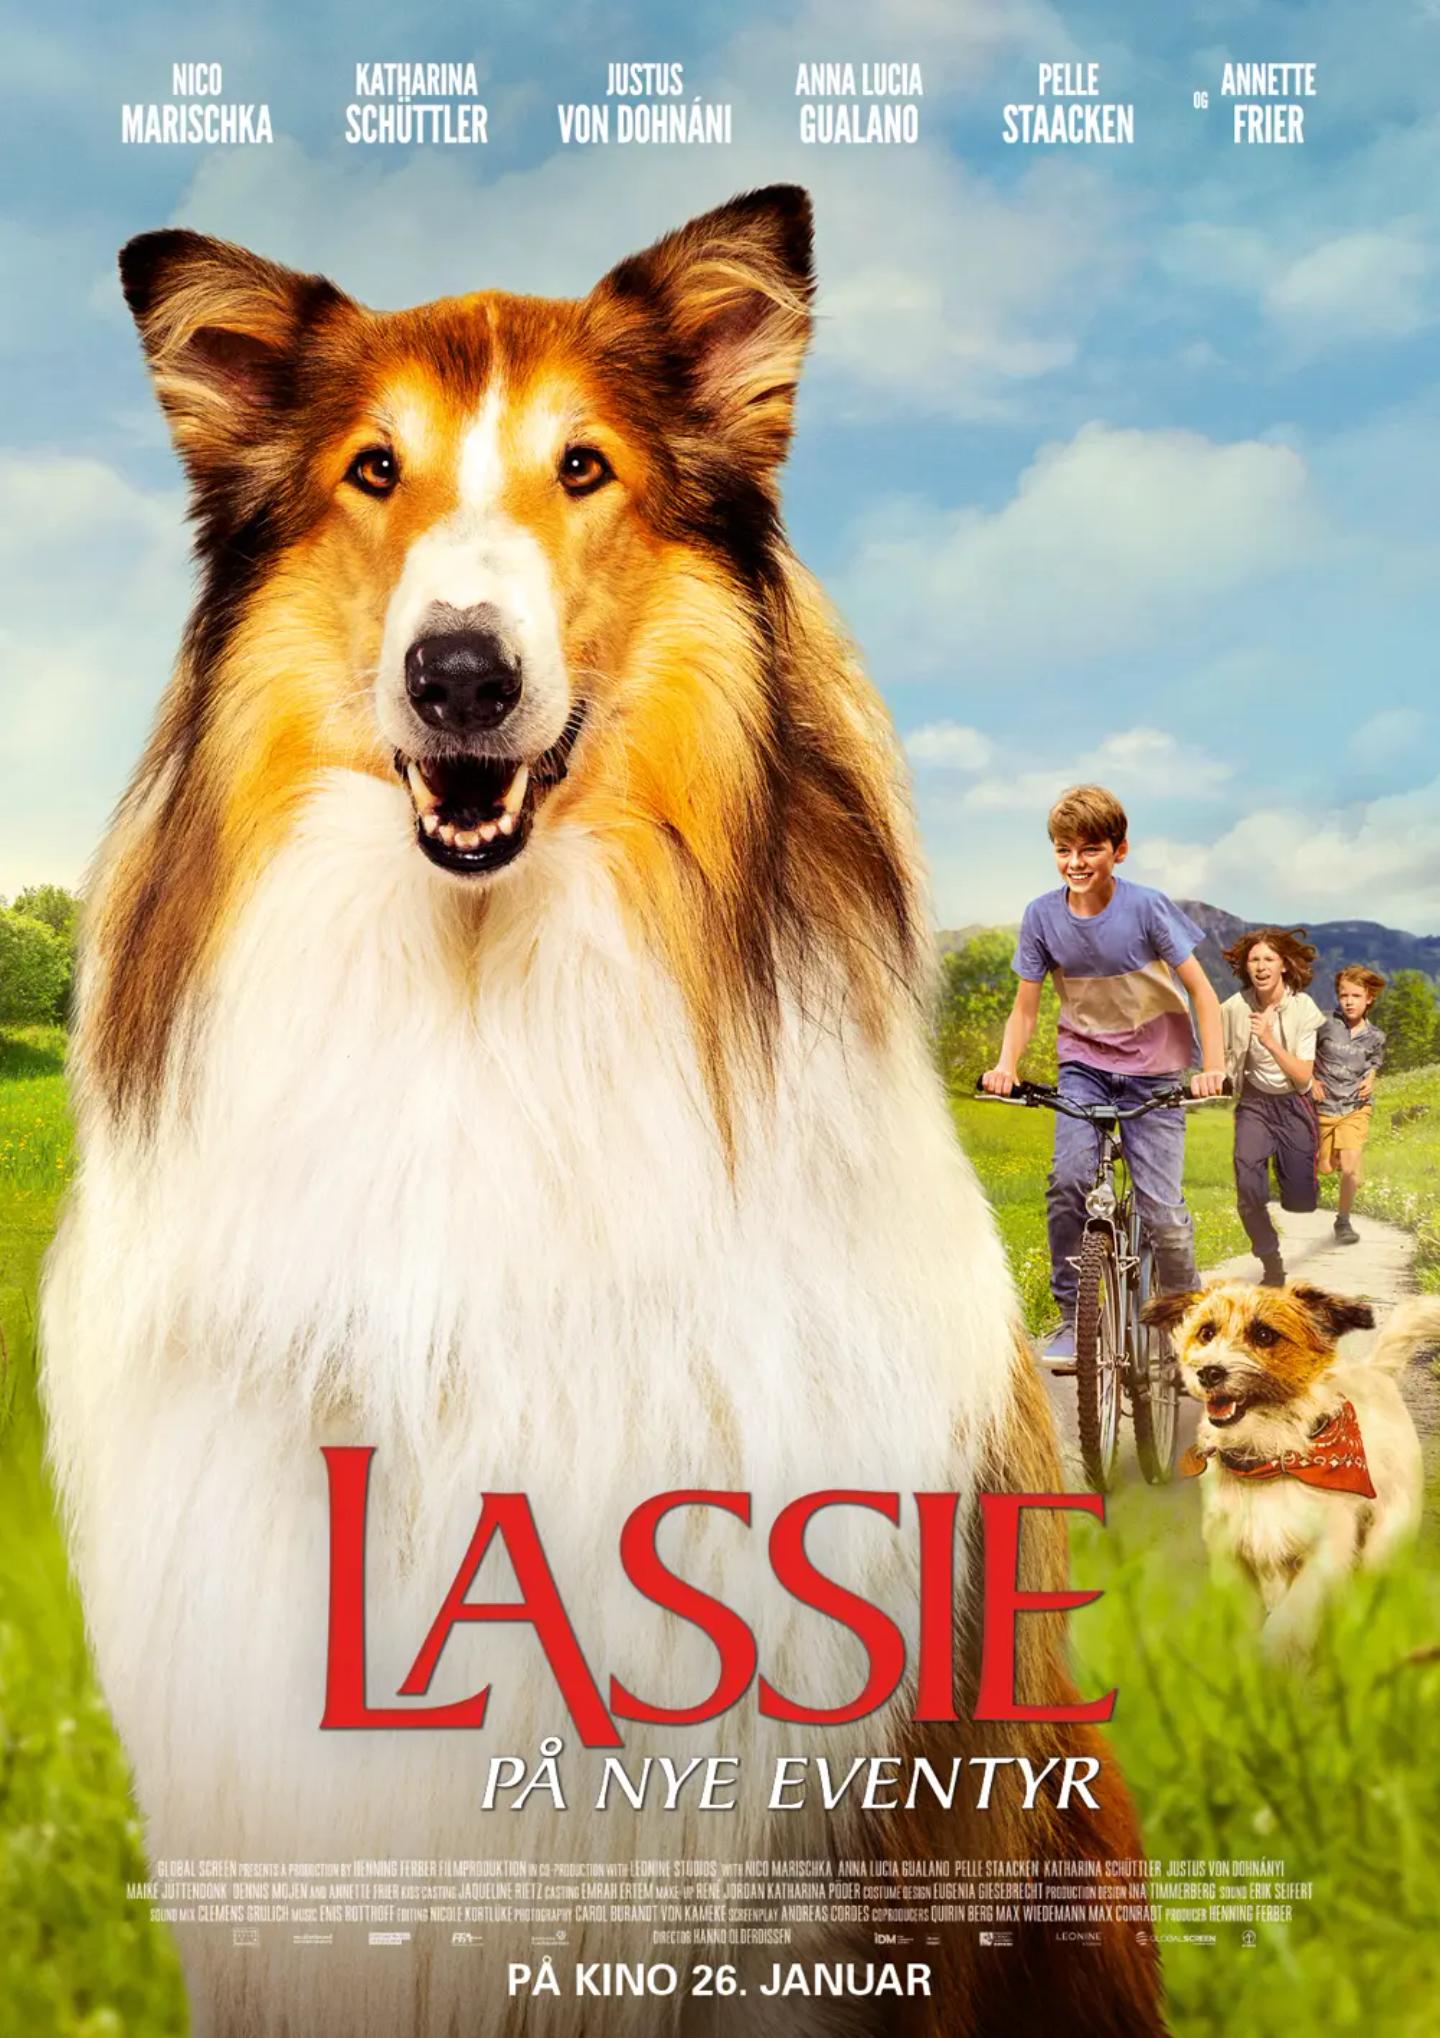 Lassie - På nye eventyr